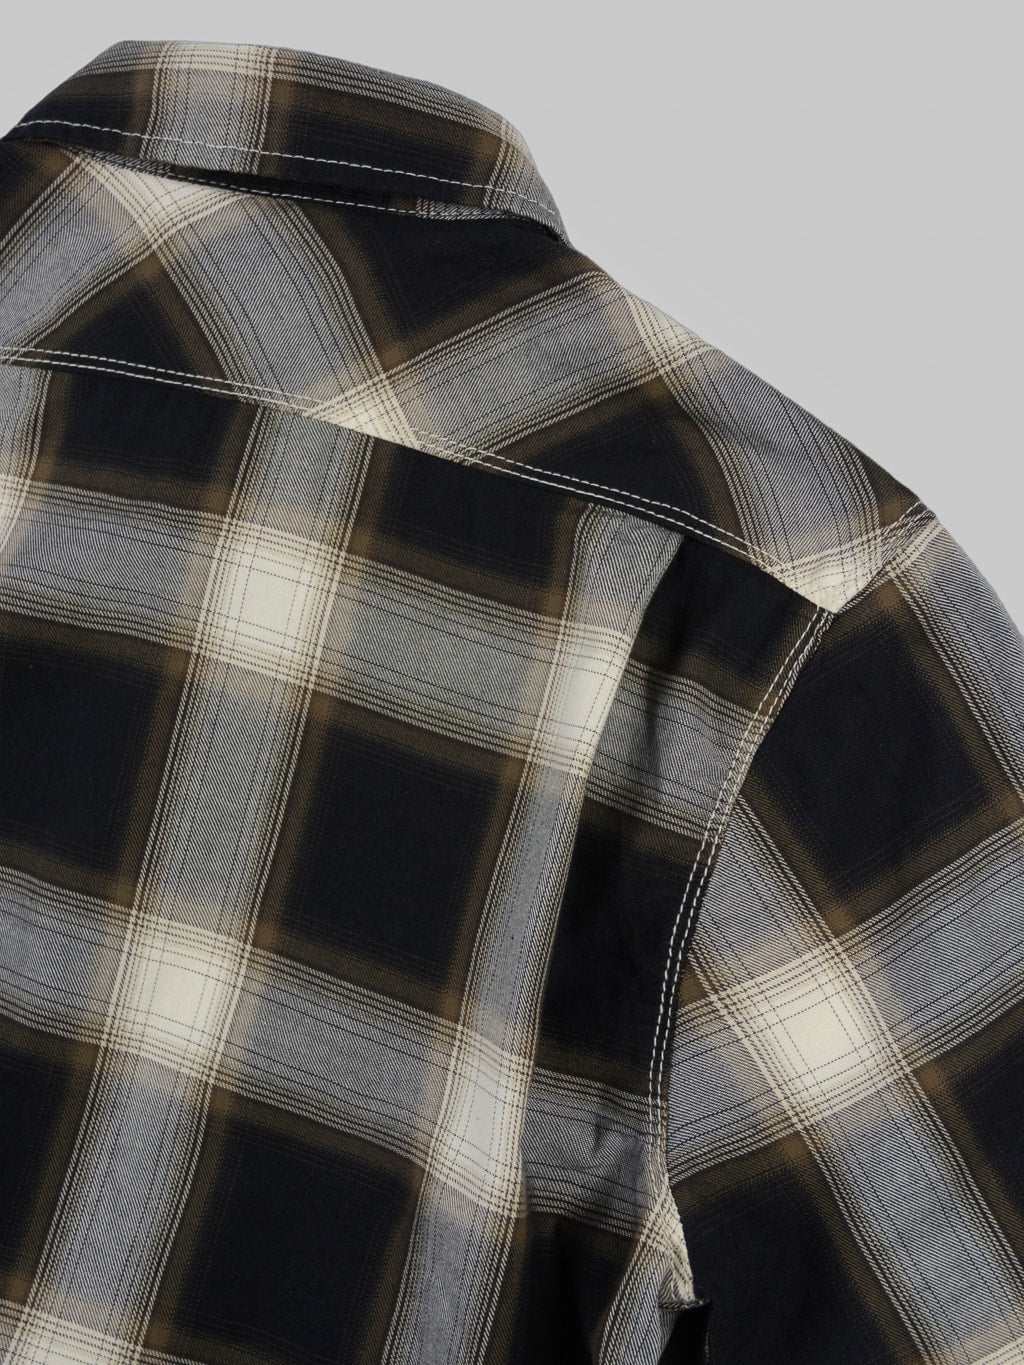 Freenote Cloth Lancaster Black Shadow Plaid Shirt back details